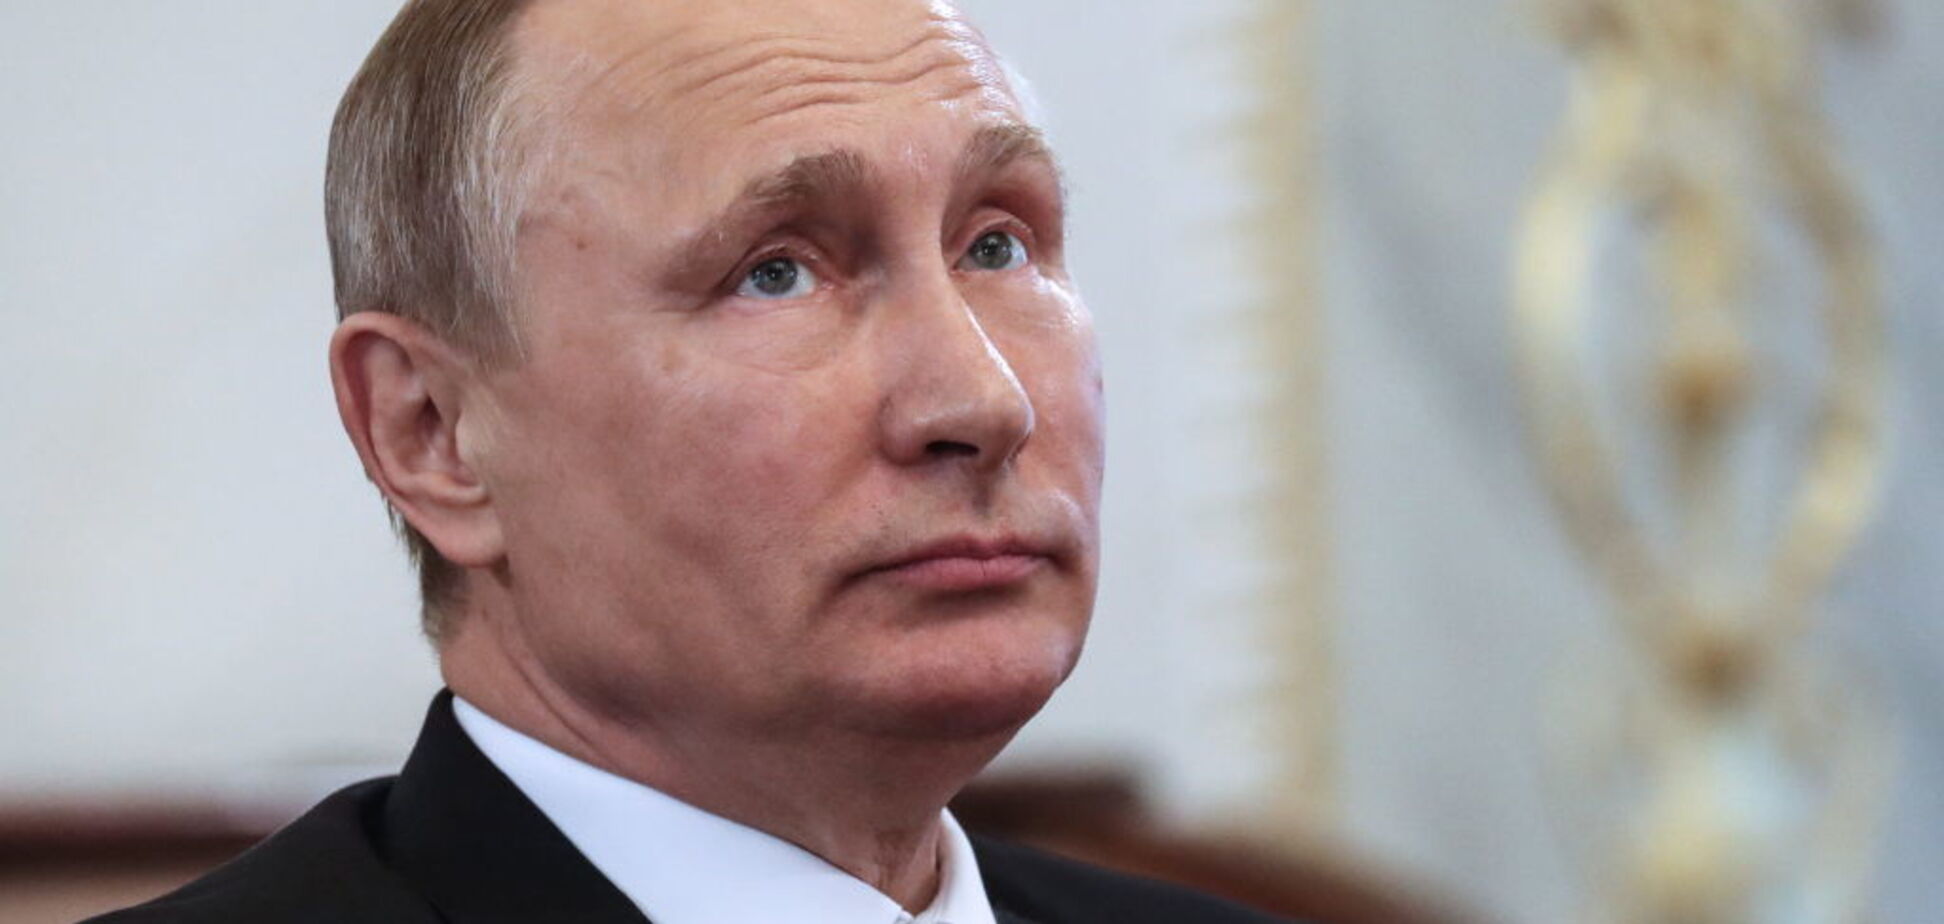 ''Ботокс стек в подбородок'': во внешности Путина подметили странный нюанс